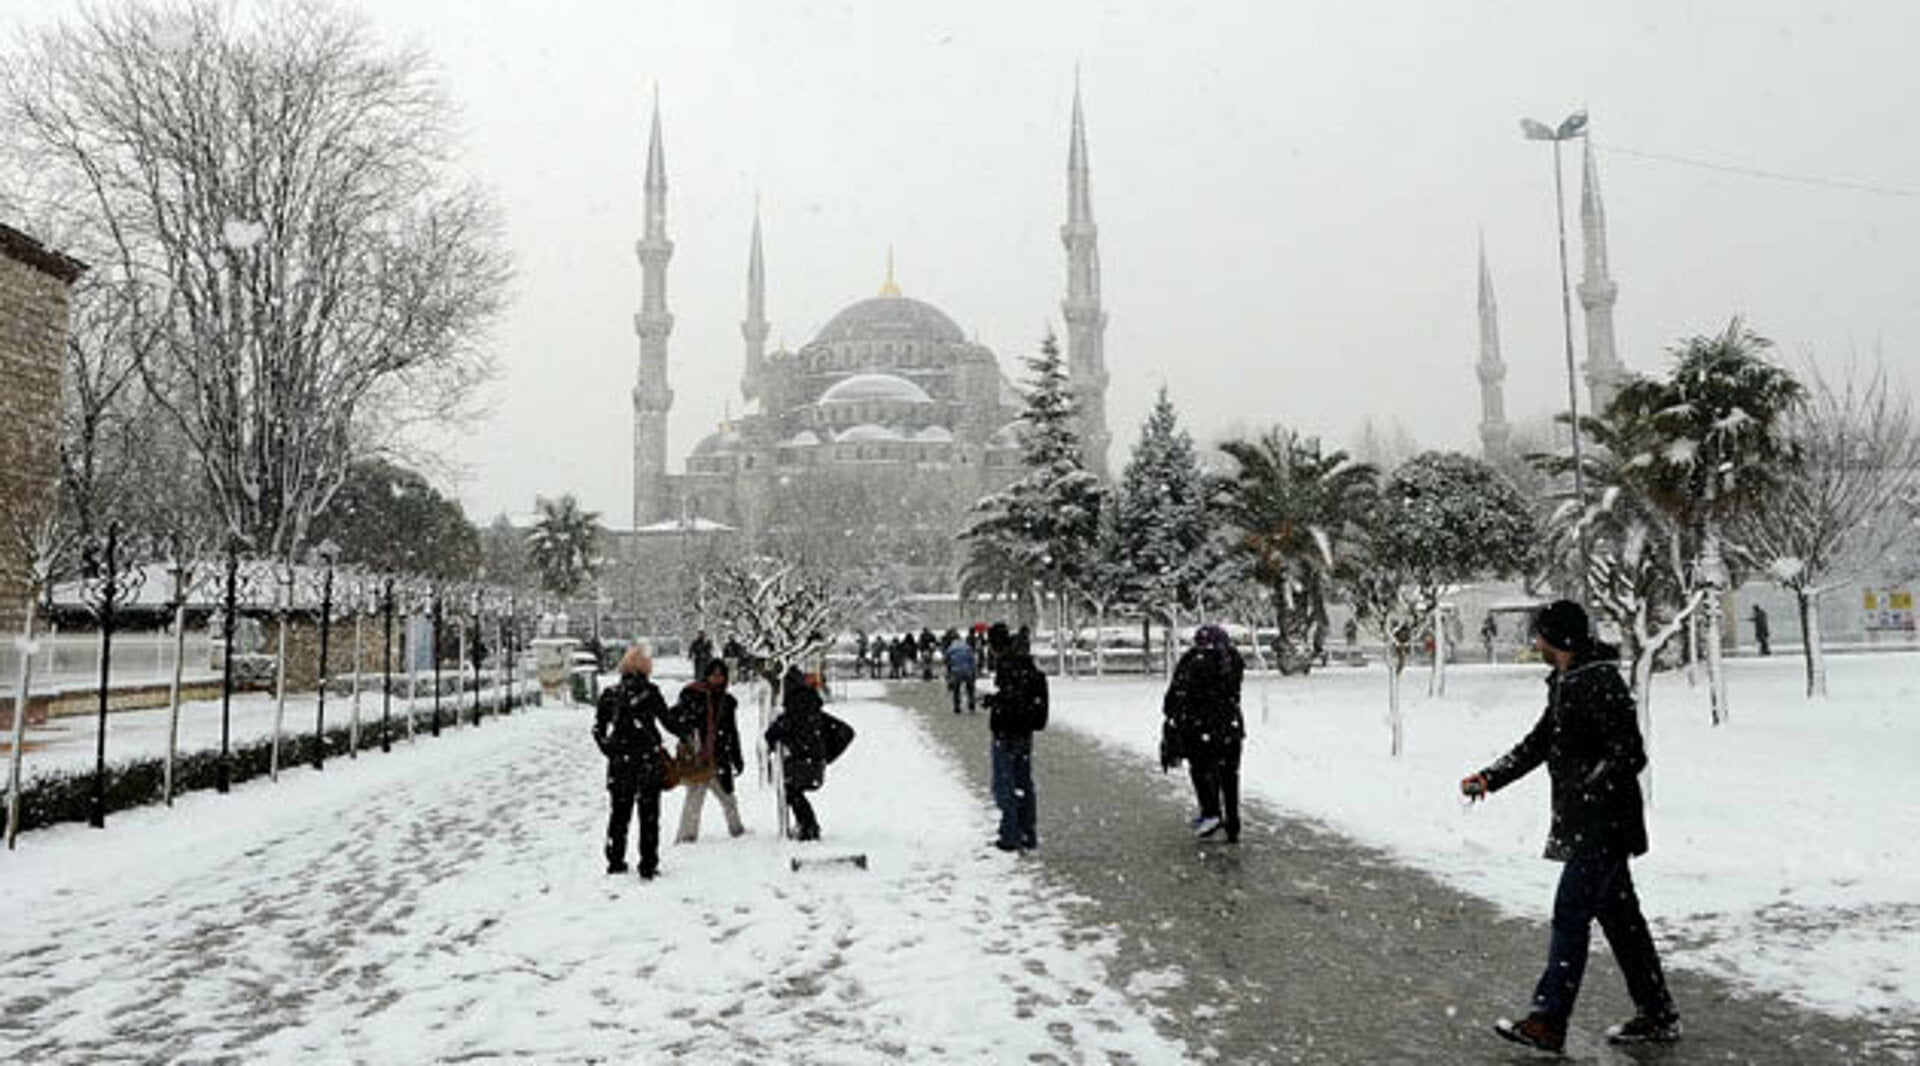 إسطنبول - بيان عاجل بشأن العاصفة الثلجية (آفار) التي ستشهدها معظم الولايات التركية هذا الاسبوع (فيديو لحالة الطقس)